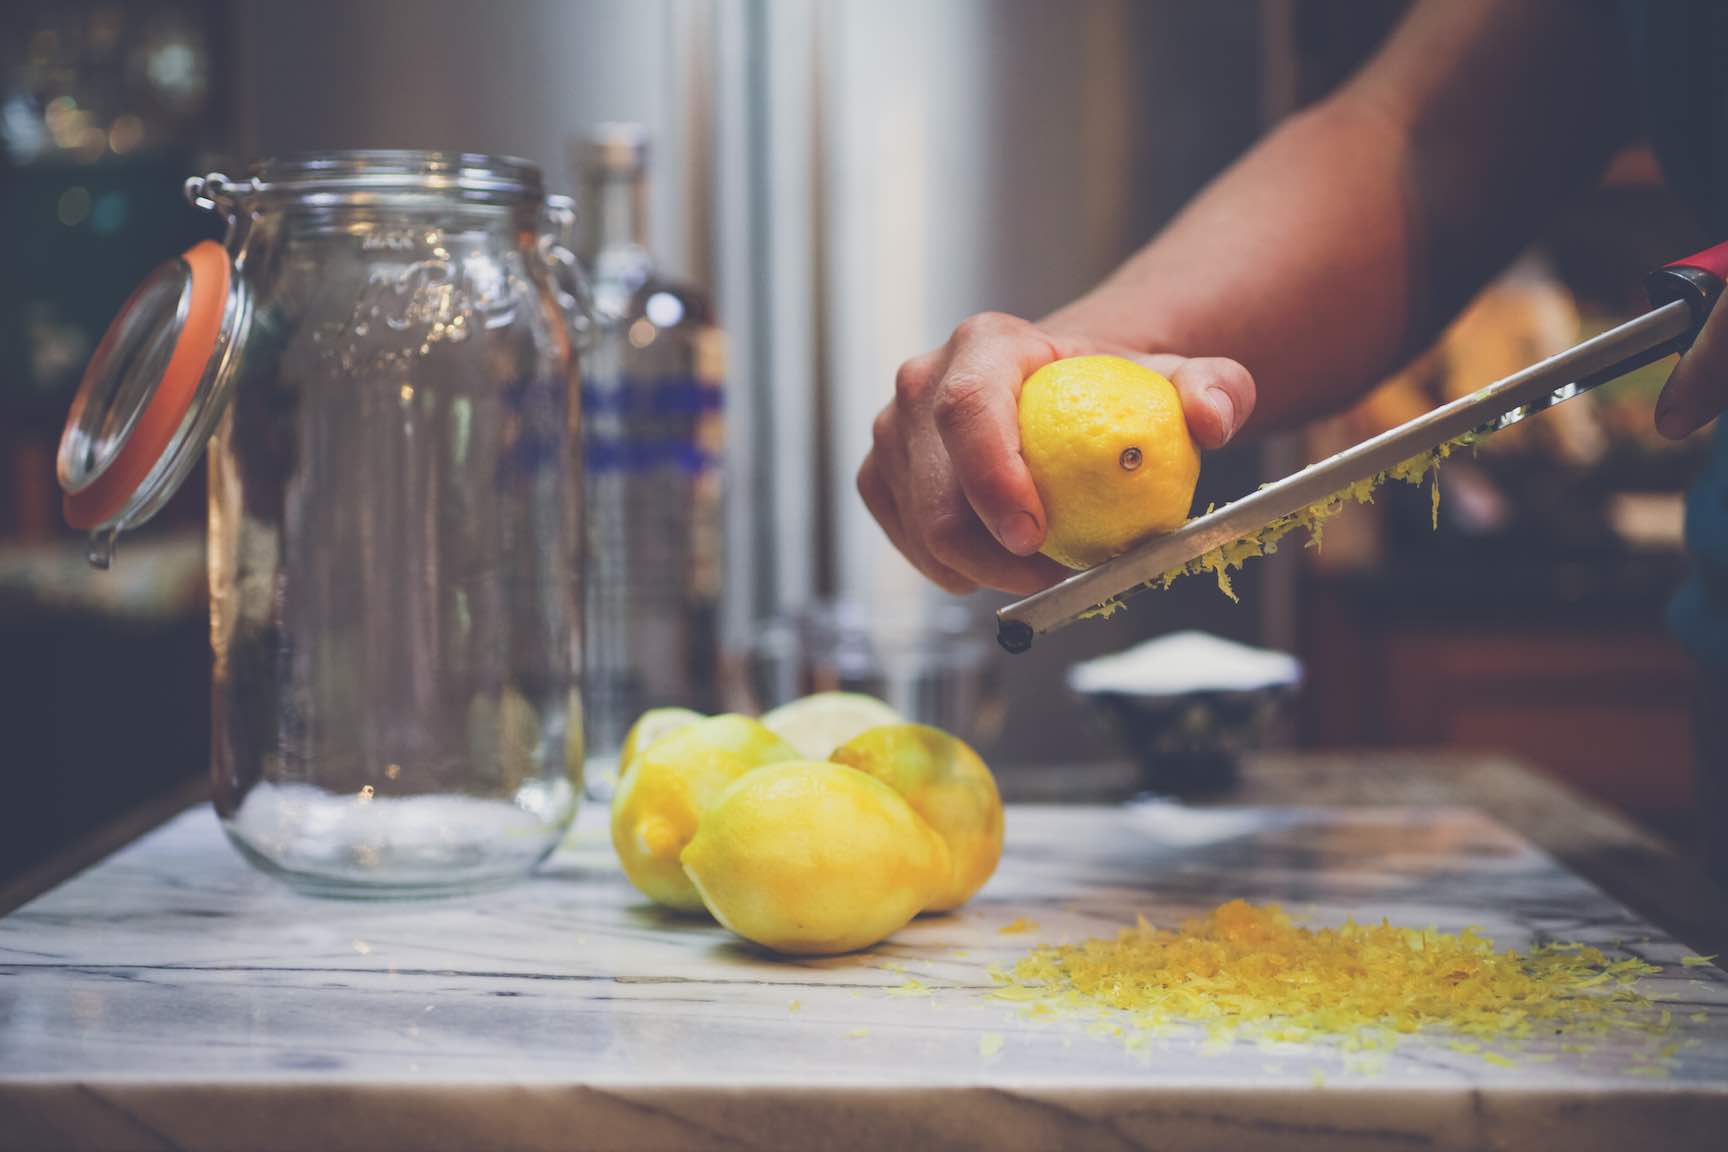 zesting lemons for homemade limoncello